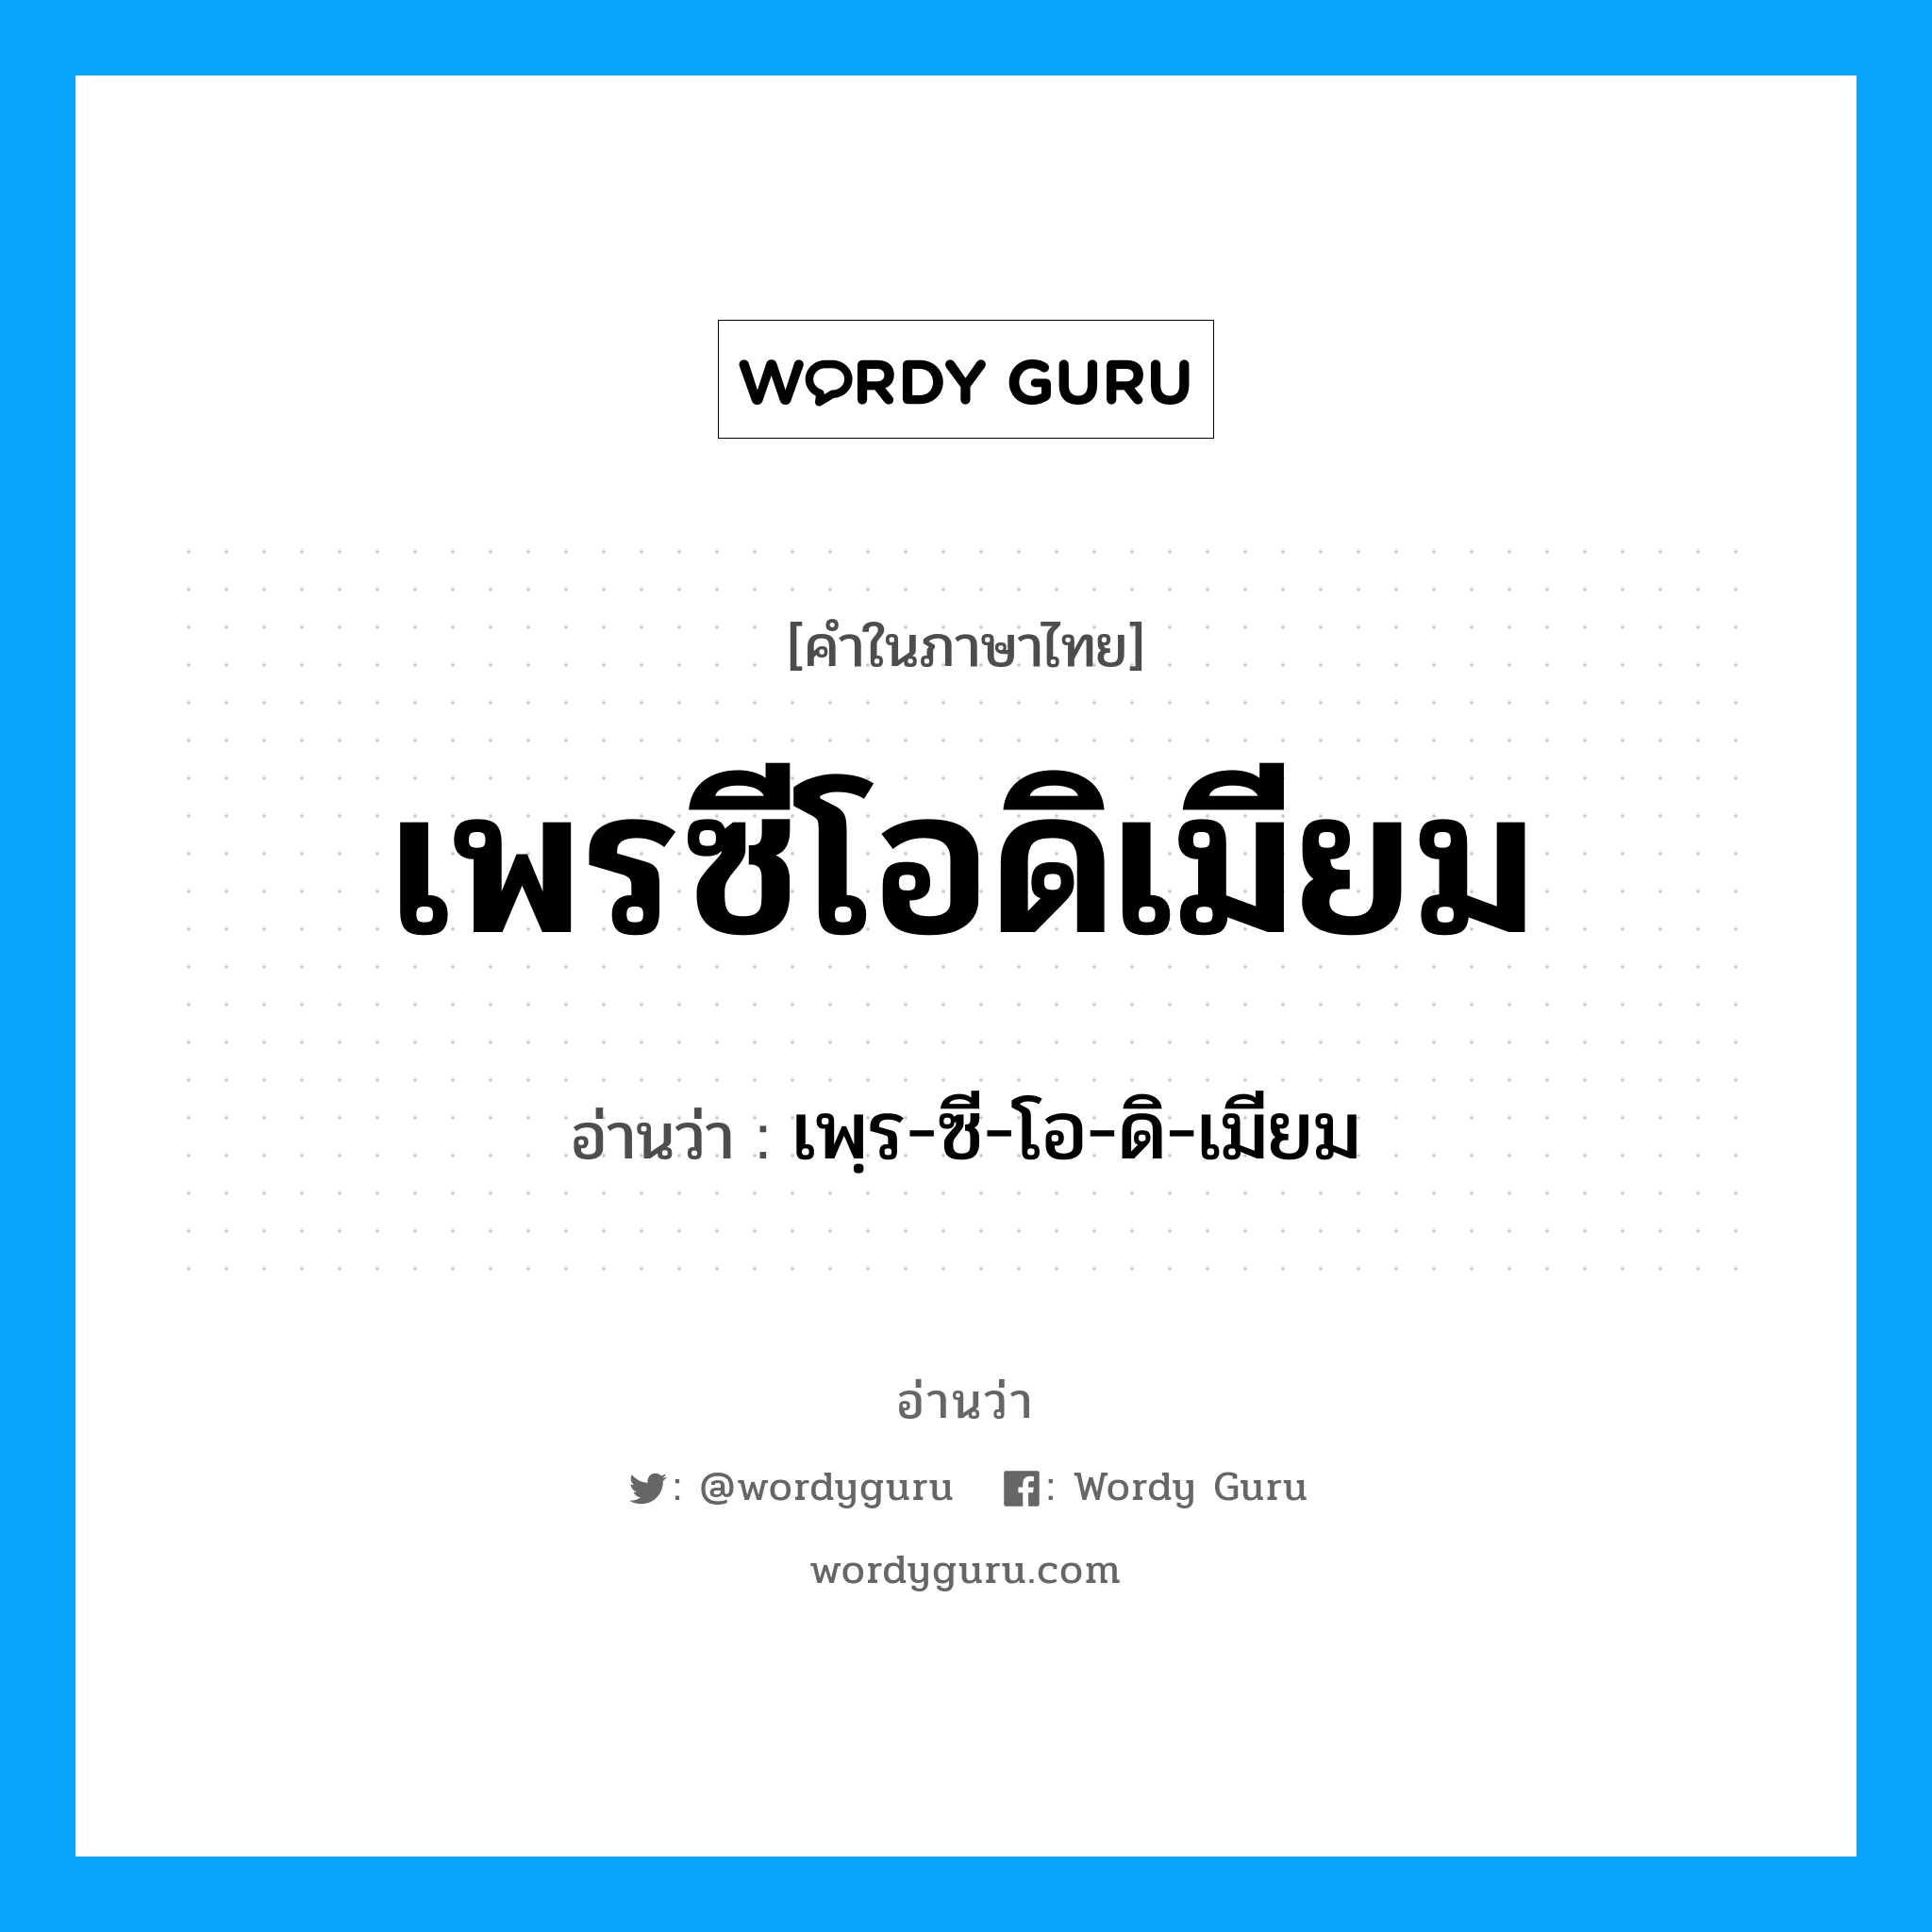 เพฺร-ซี-โอ-ดิ-เมียม เป็นคำอ่านของคำไหน?, คำในภาษาไทย เพฺร-ซี-โอ-ดิ-เมียม อ่านว่า เพรซีโอดิเมียม